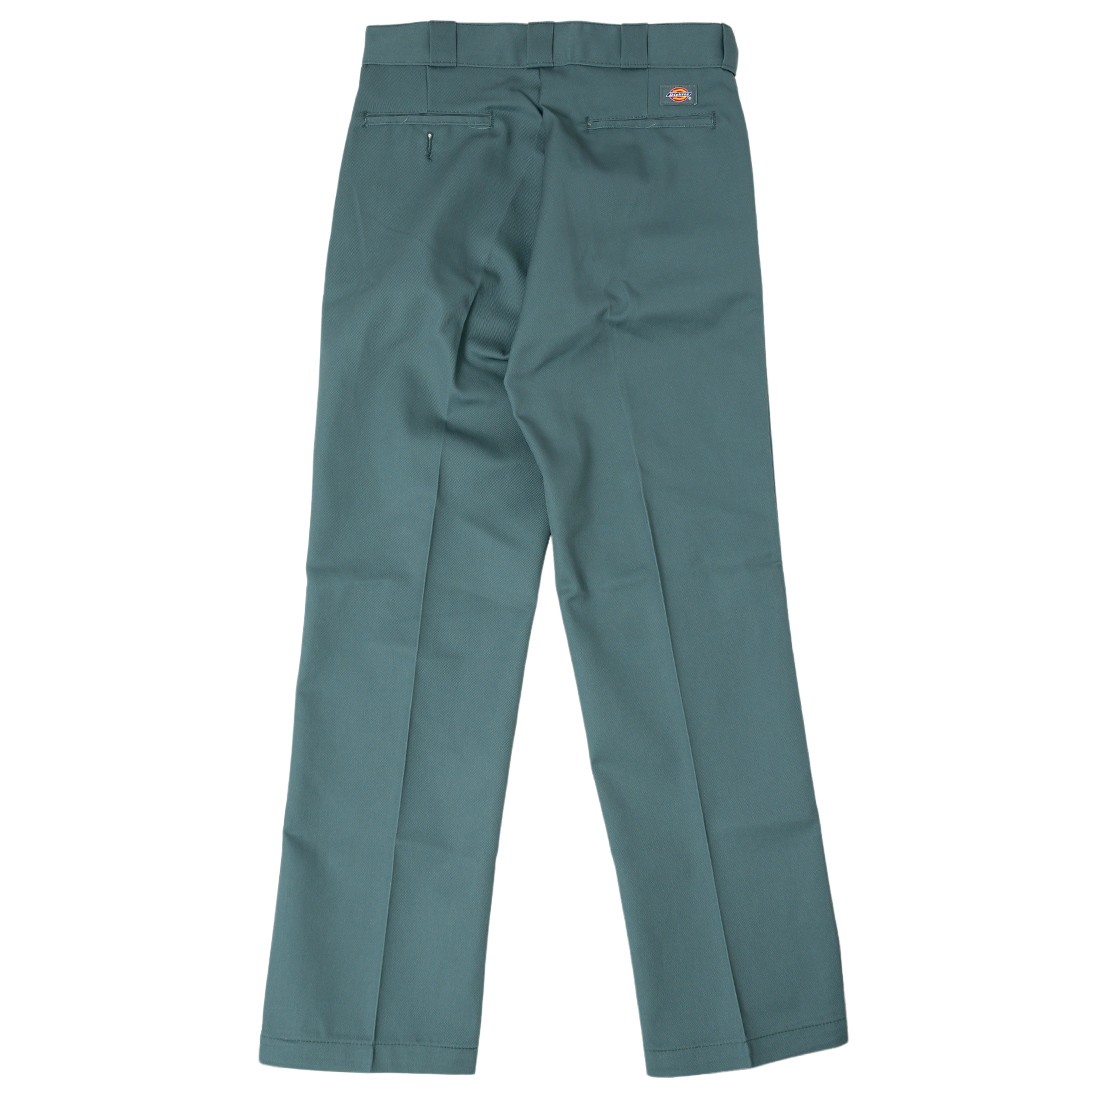 Dickies Original 874 Work Pants - Hunter Green